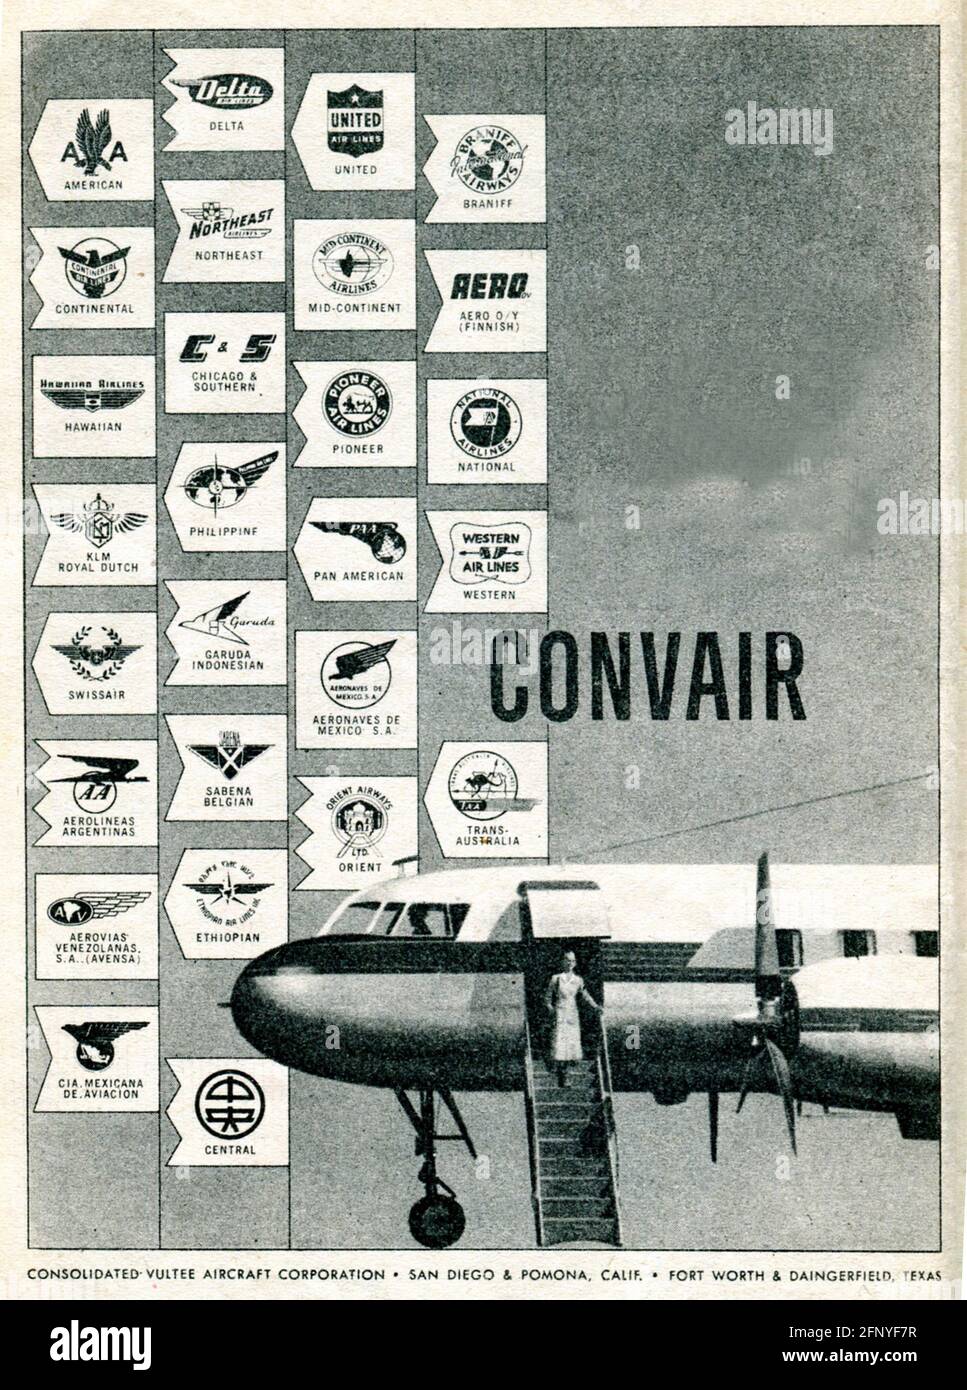 Convair LinerVintage alte Printwerbung vom Reader's Digest Magazin, italienische Ausgabe 1952 Stockfoto